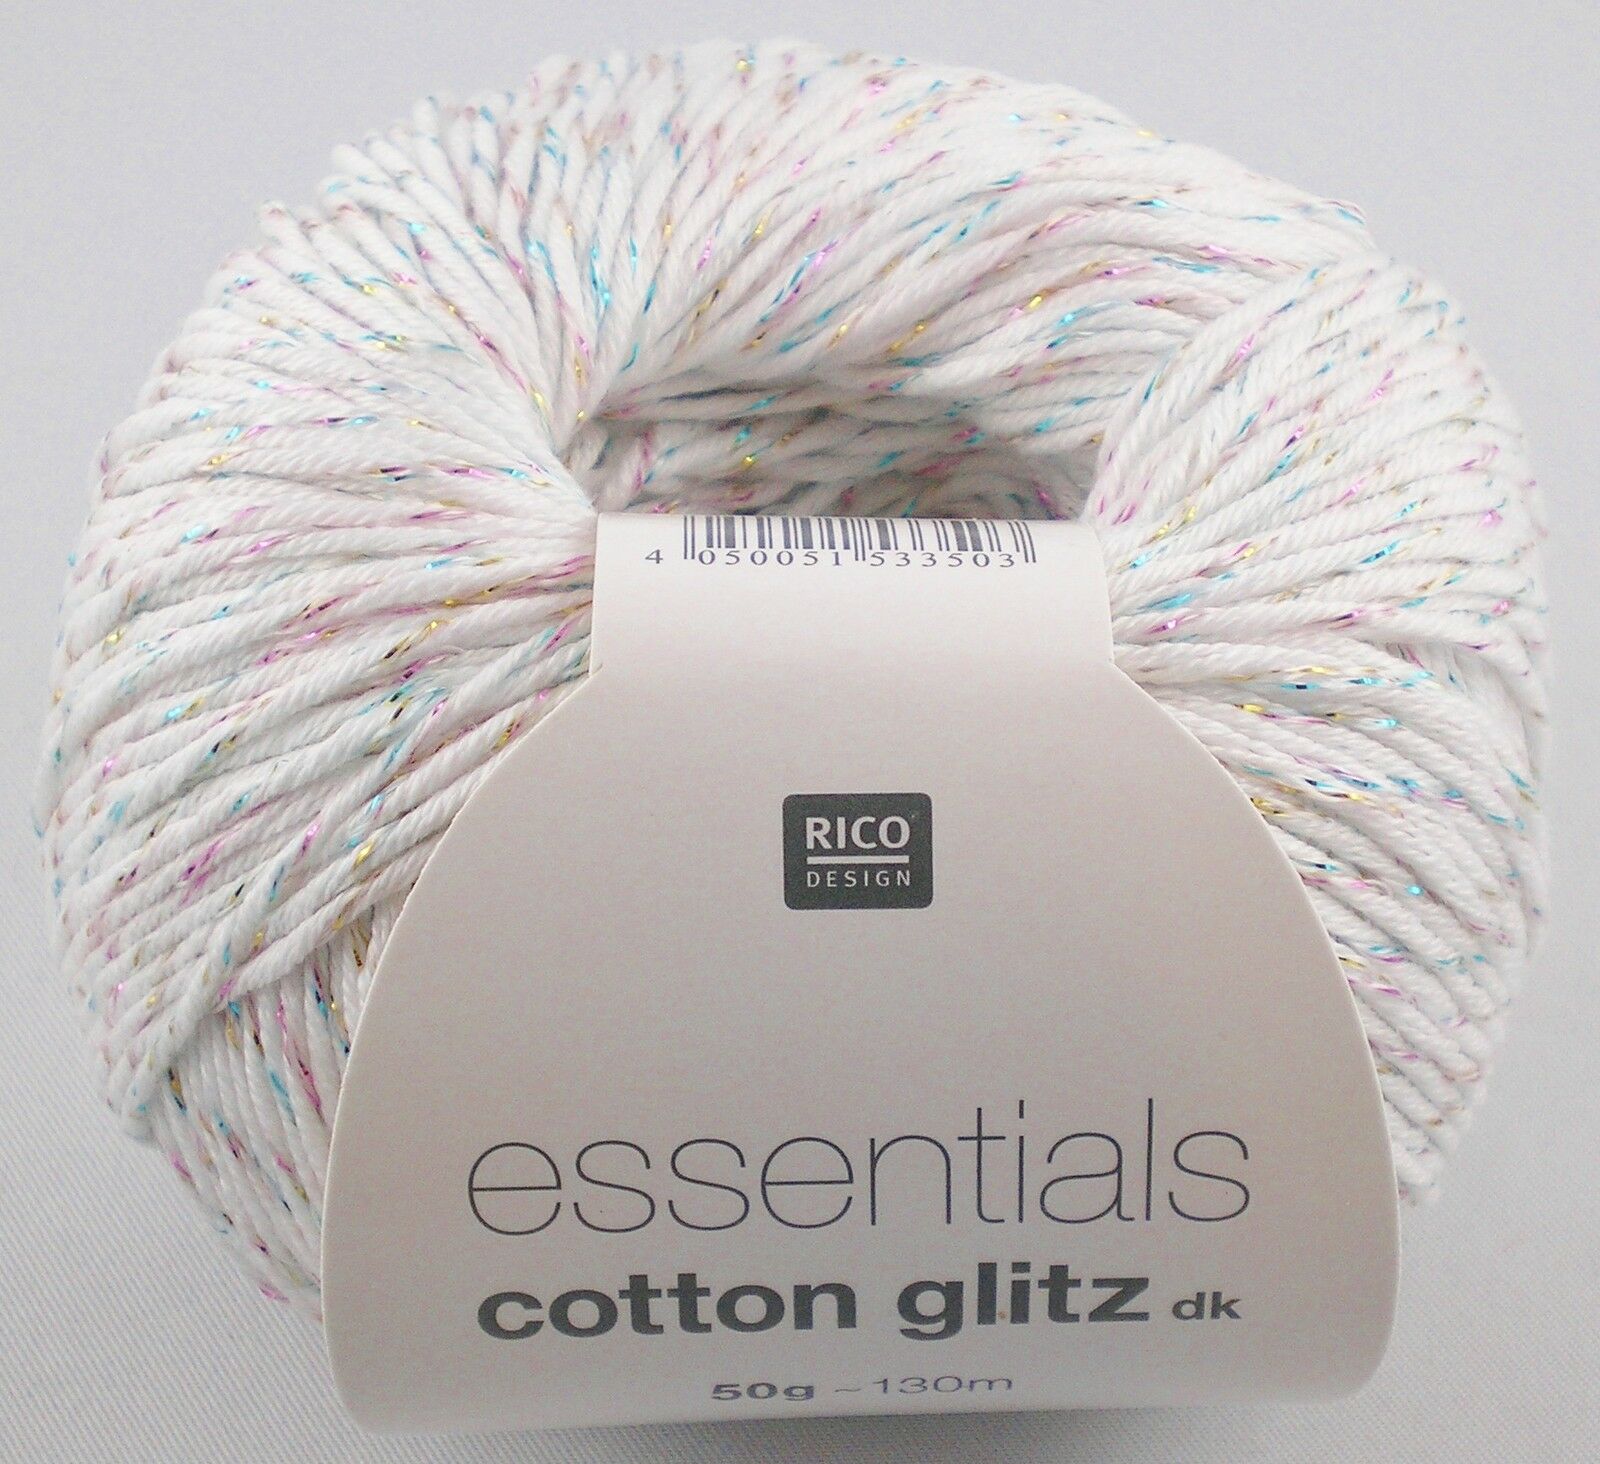 NEUE FARBE 2018 !! 50g Rico Design Essentials Cotton Glitz dk mit eingearbeitetem Glitzerfaden Farbe 12 mint